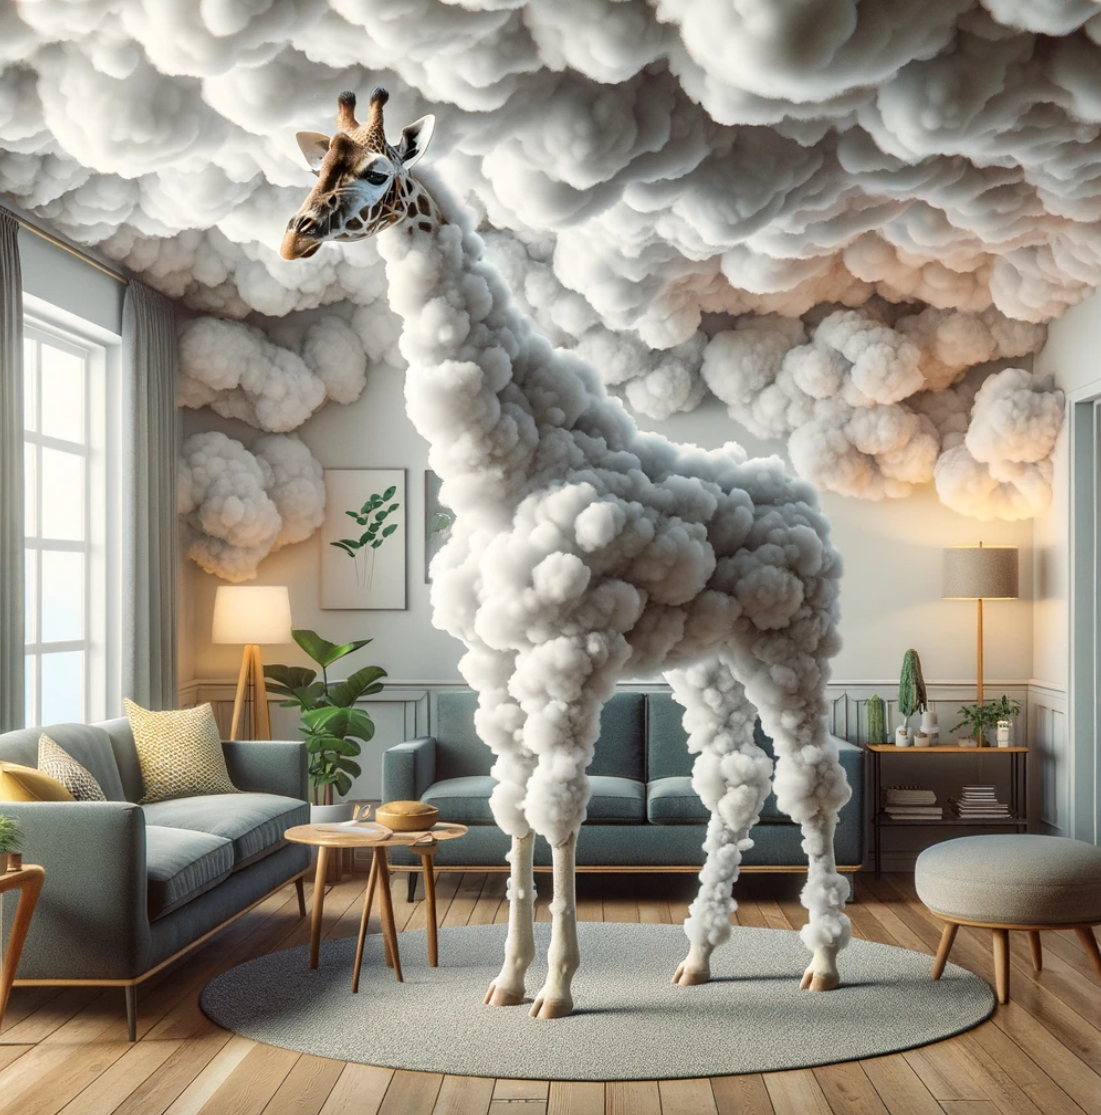 Ein mit KI erstelltes Bild, das eine Giraffe in einem Raum zeigt. Die Giraffe besteht aus Wolken. 